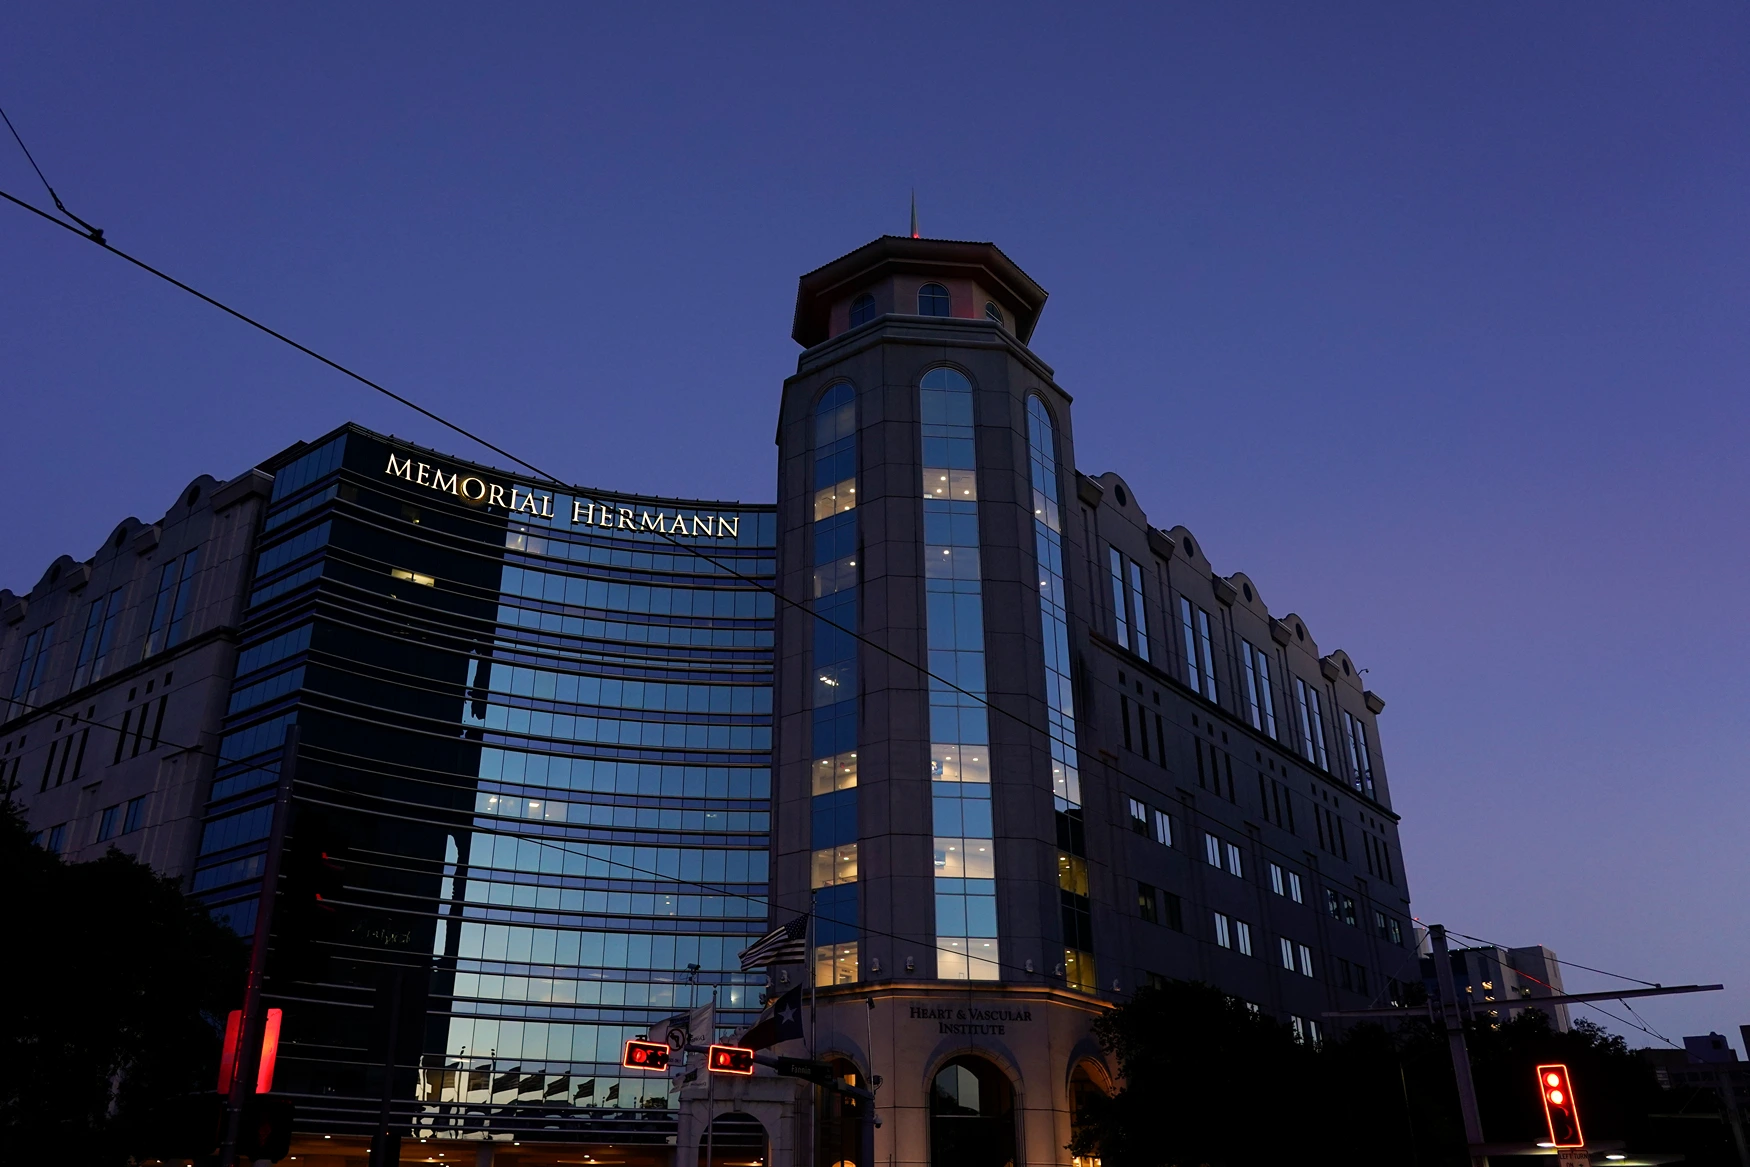 Memorial Hermann Hospital in Houston's Medical Center